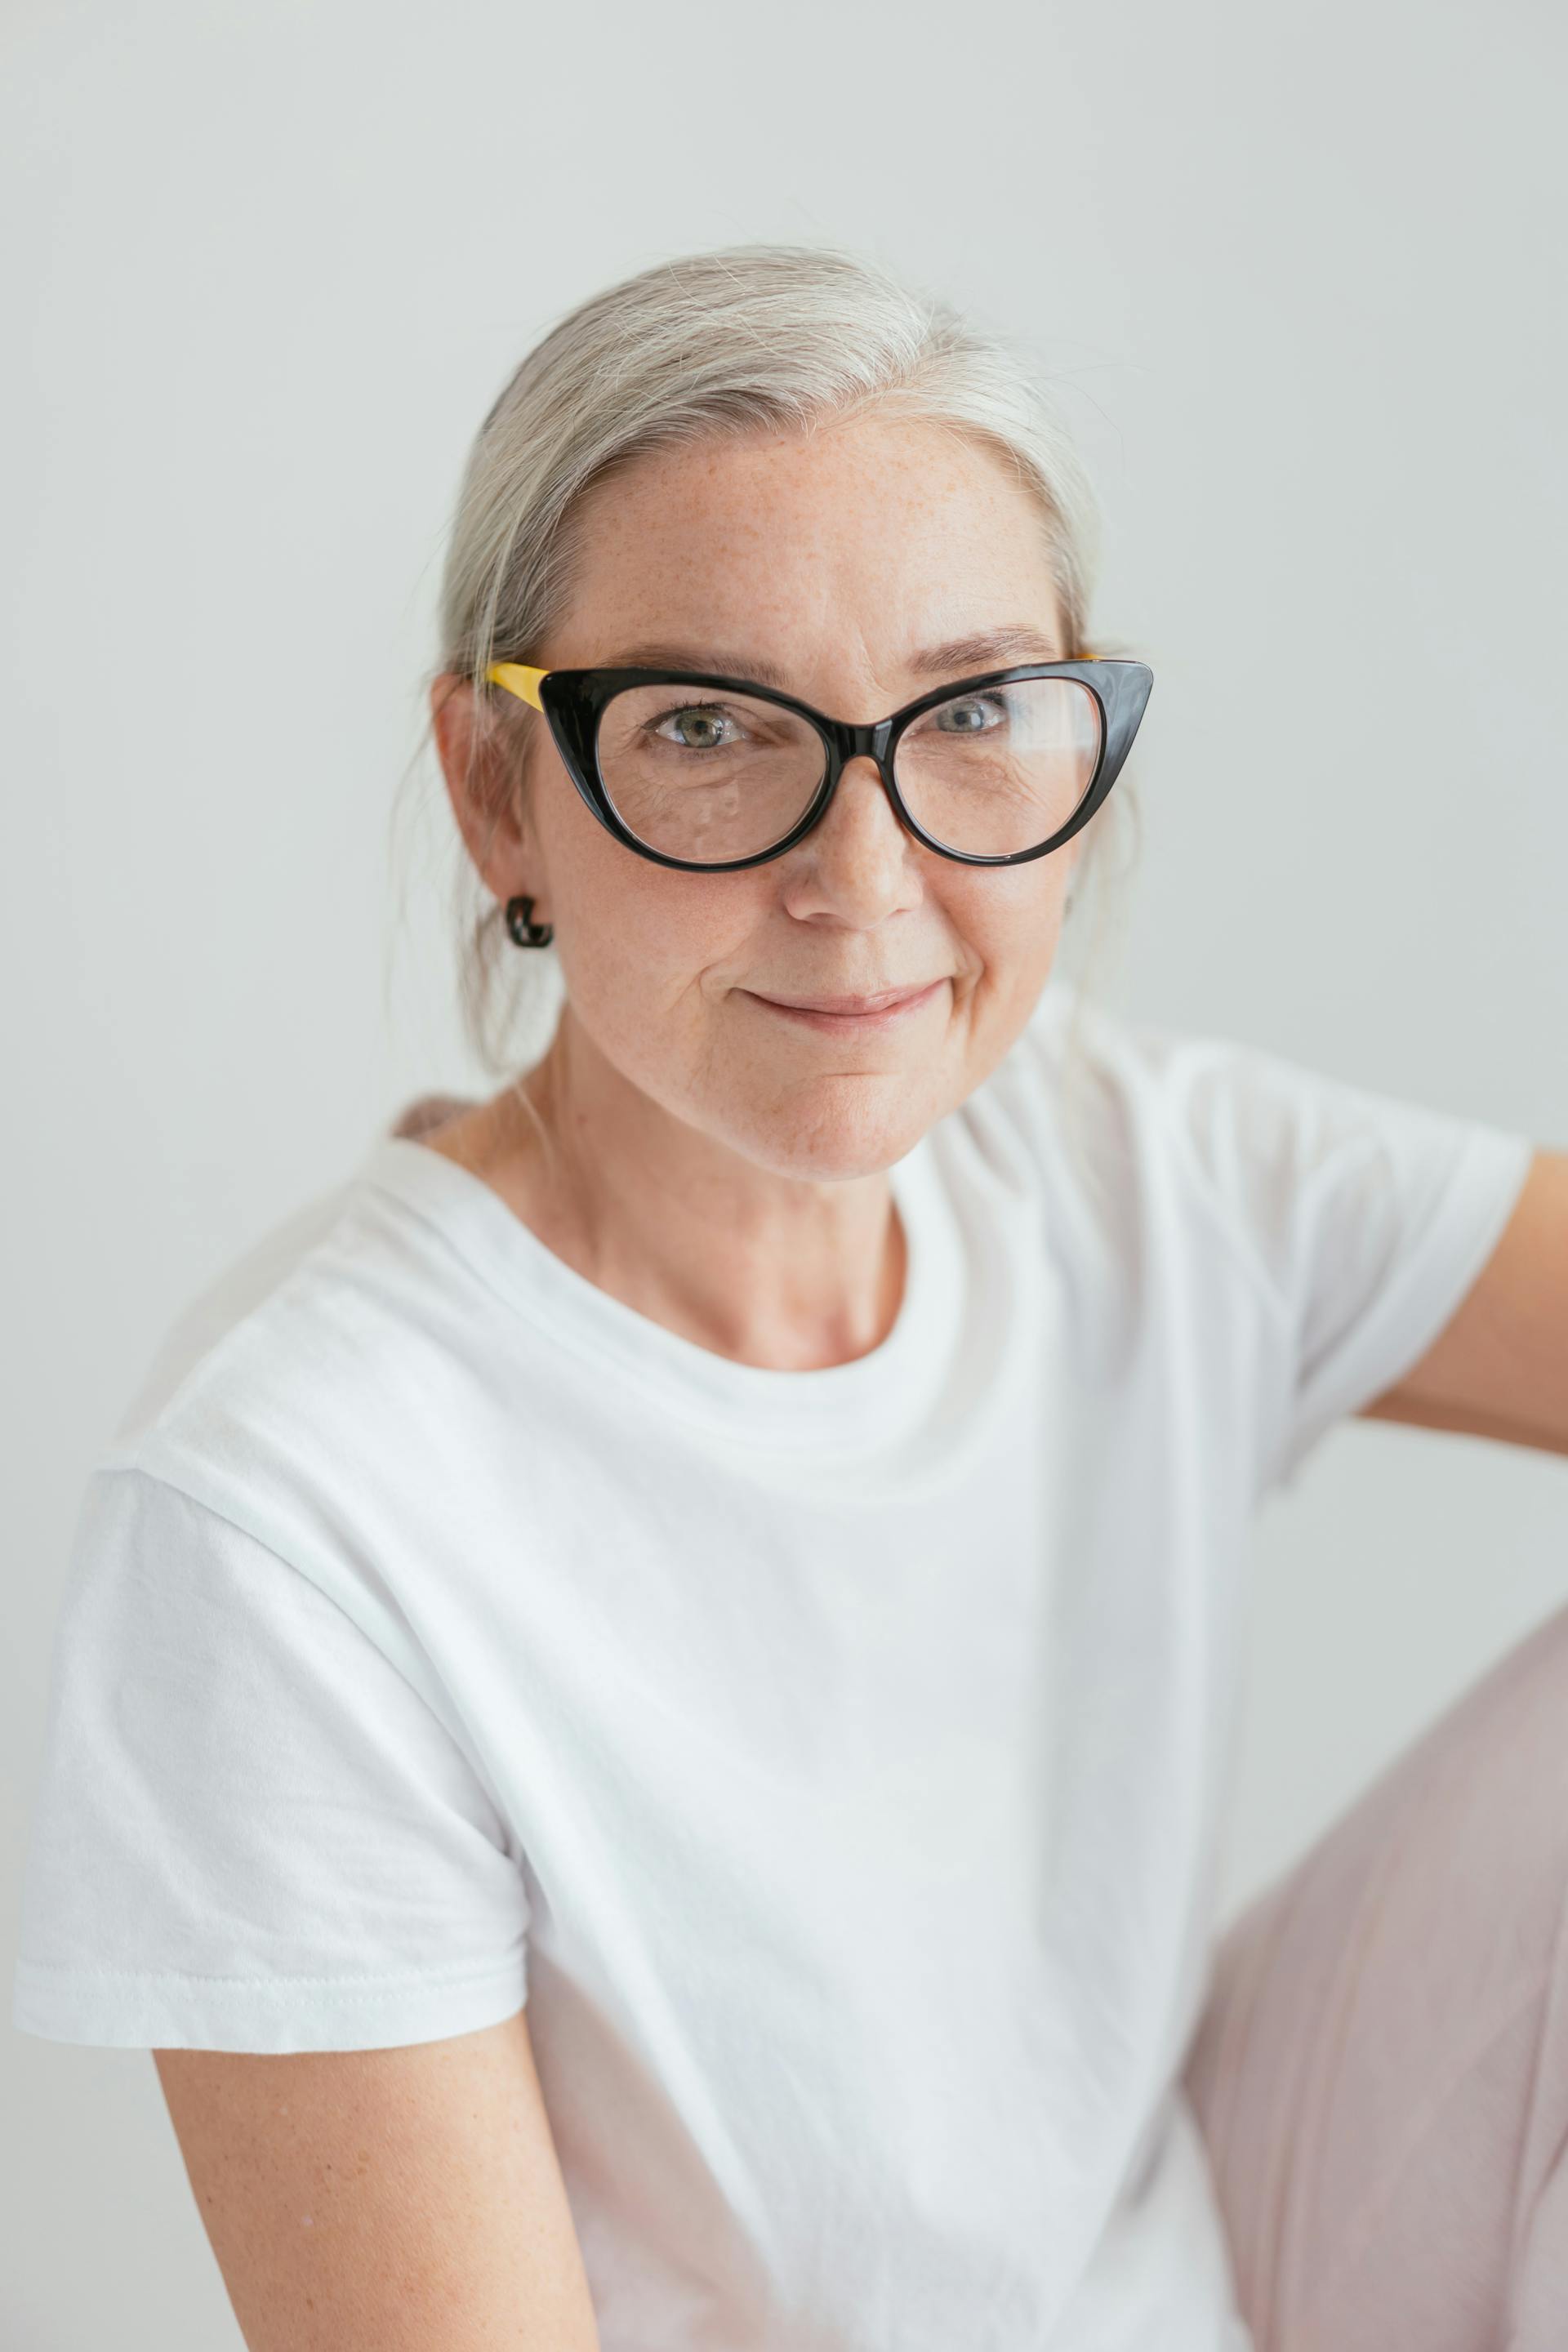 Eine lächelnde ältere Frau mit Brille | Quelle: Pexels